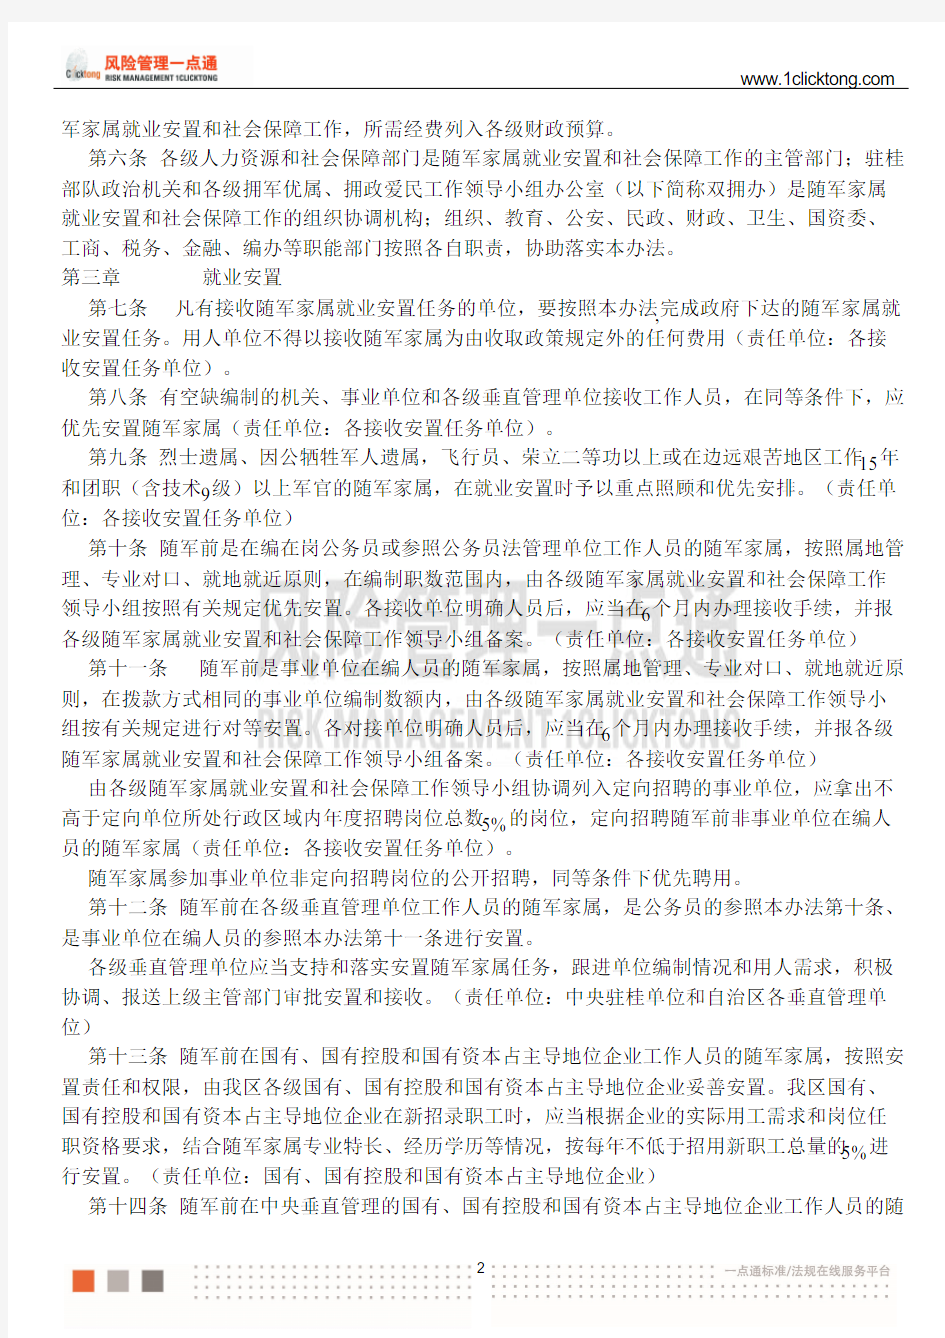 广西壮族自治区随军家属就业安置和社会保障暂行办法(2014年修订)